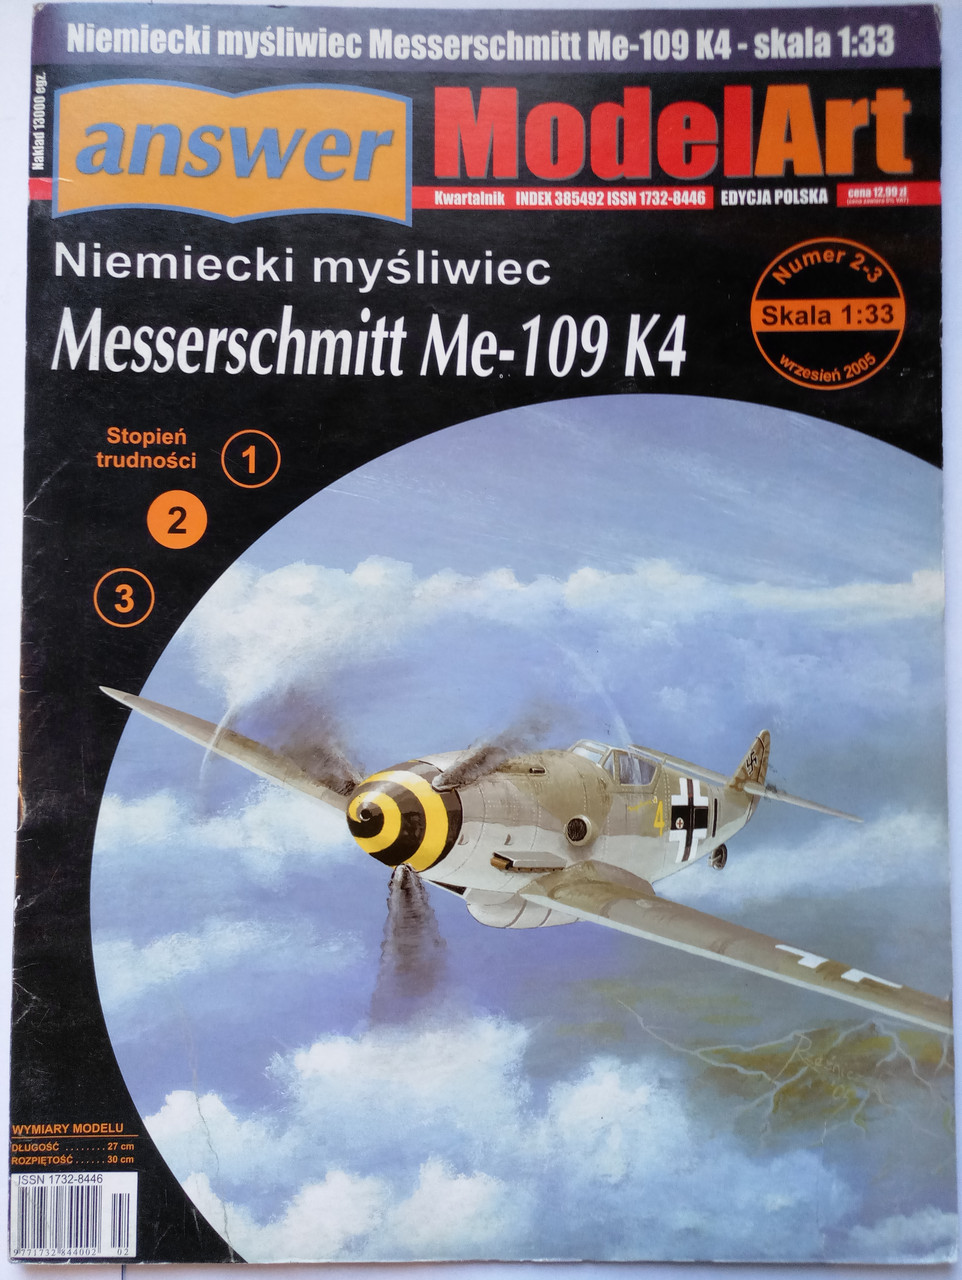 Messerschmitt Me-109 K4 1/33